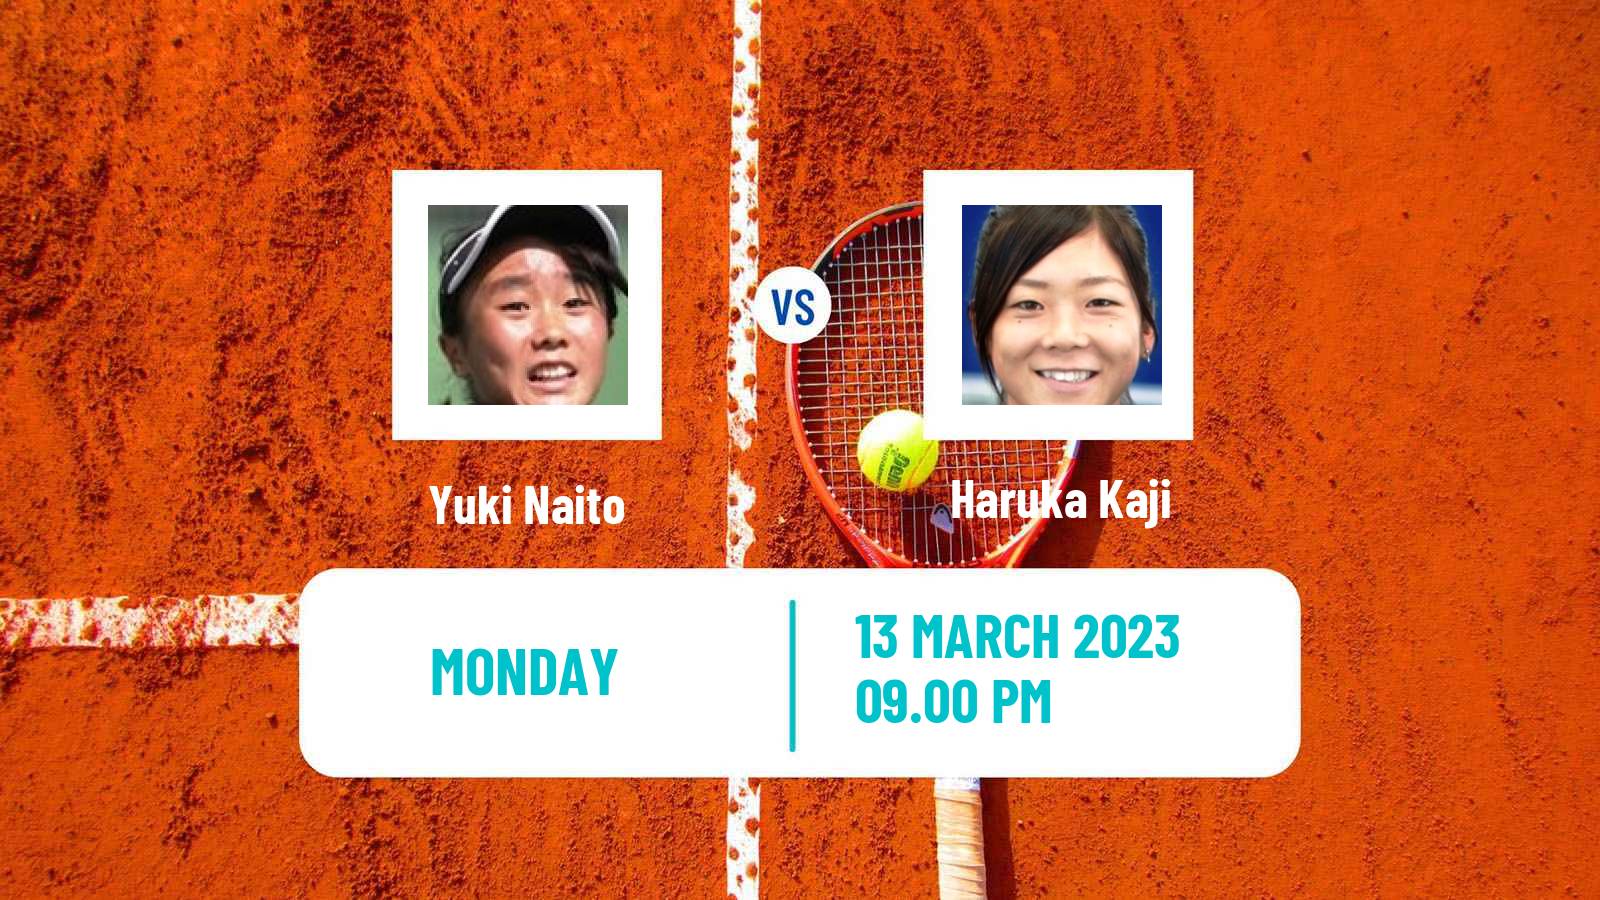 Tennis ITF Tournaments Yuki Naito - Haruka Kaji